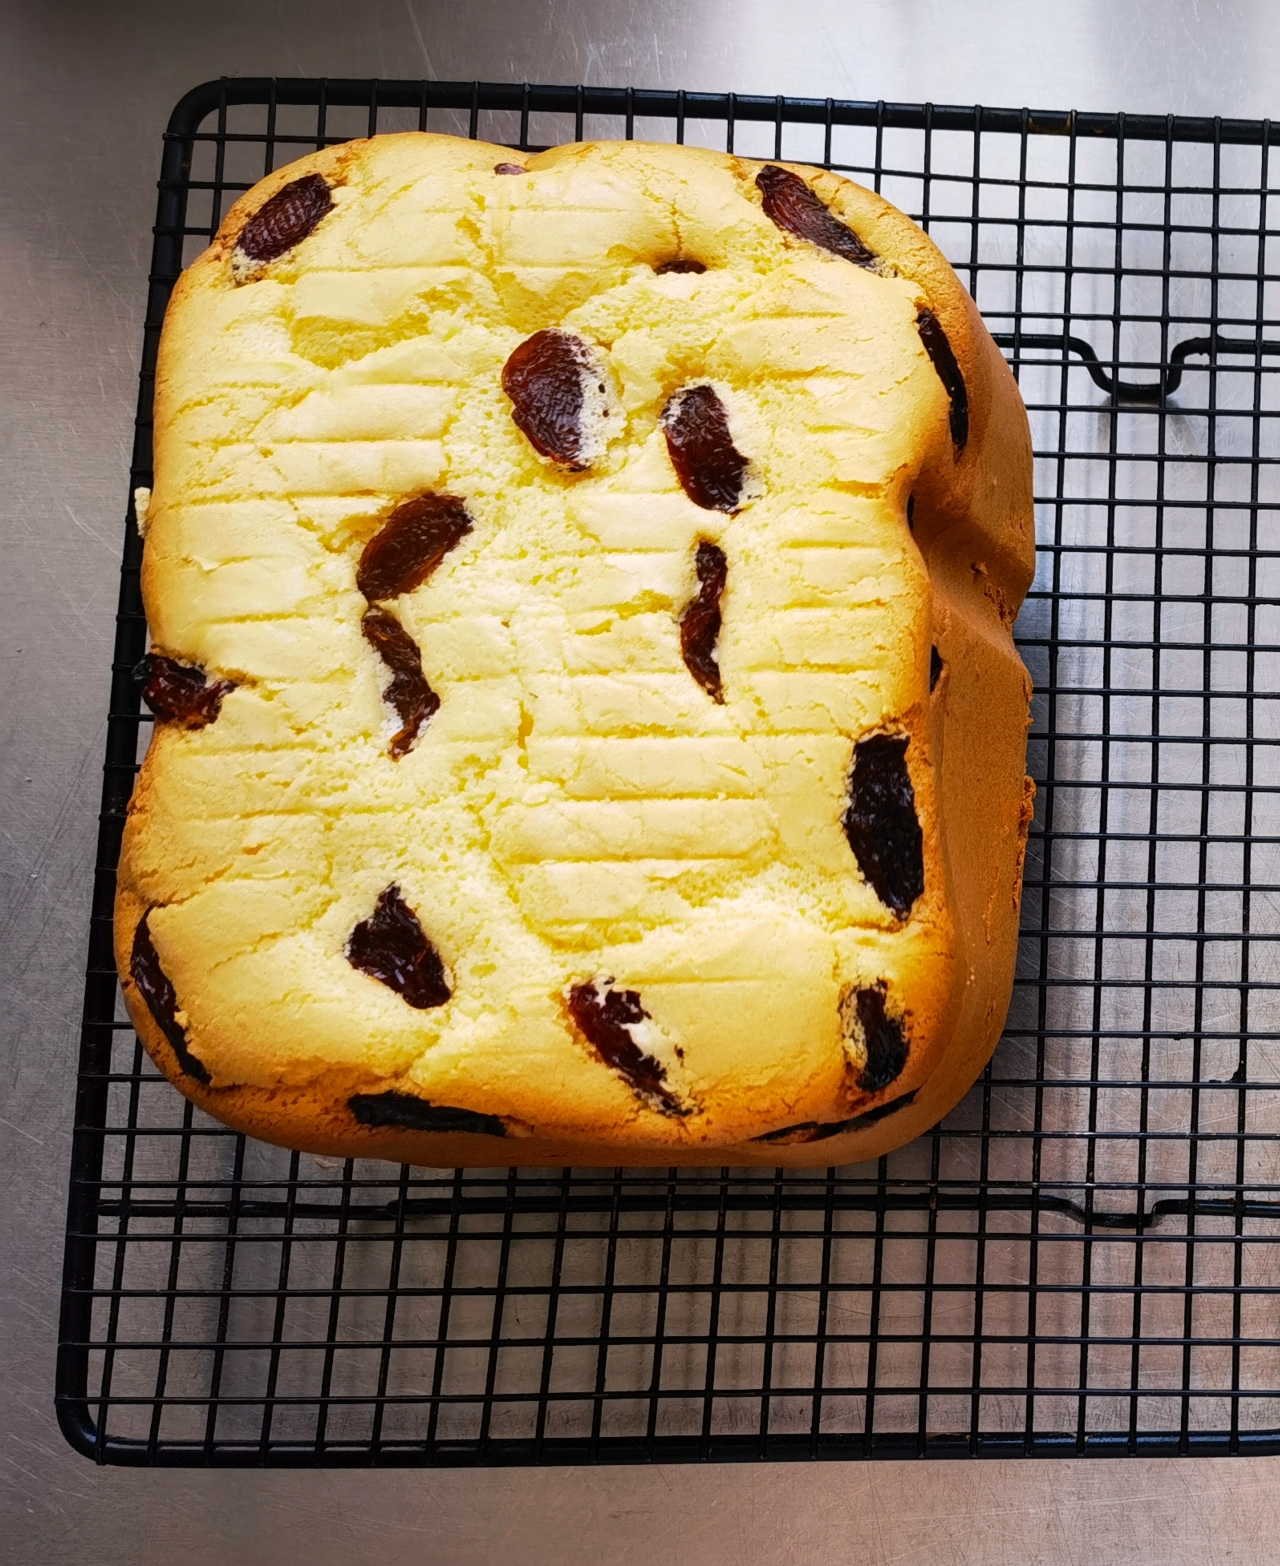 用面包机同样做出丝稠般柔软的戚风蛋糕